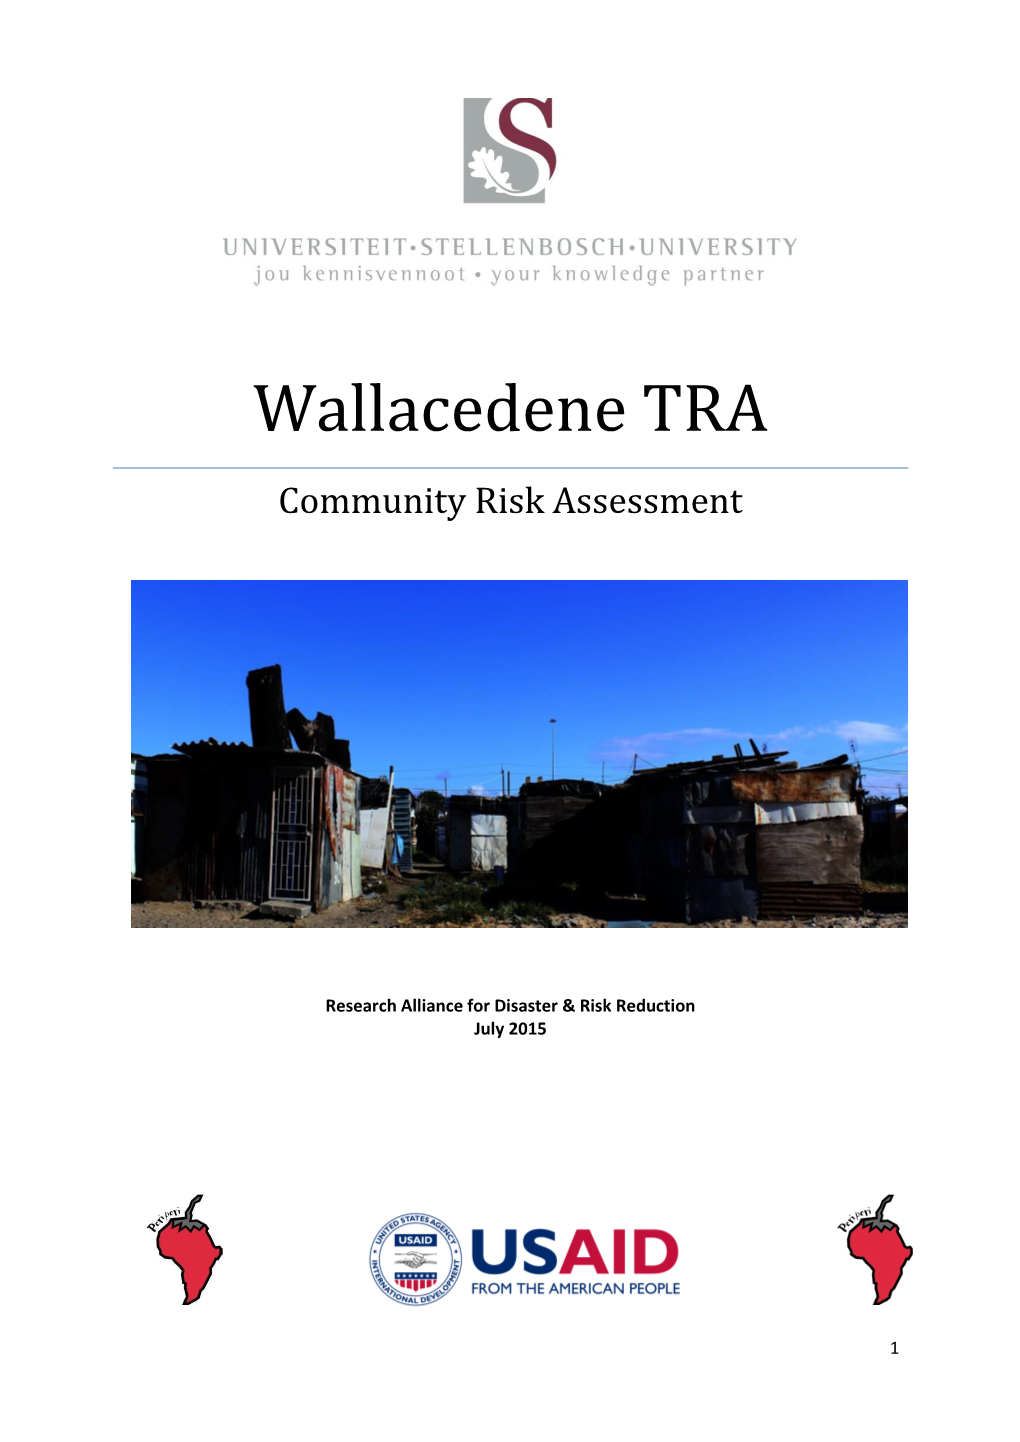 Wallacedene TRA Community Risk Assessment